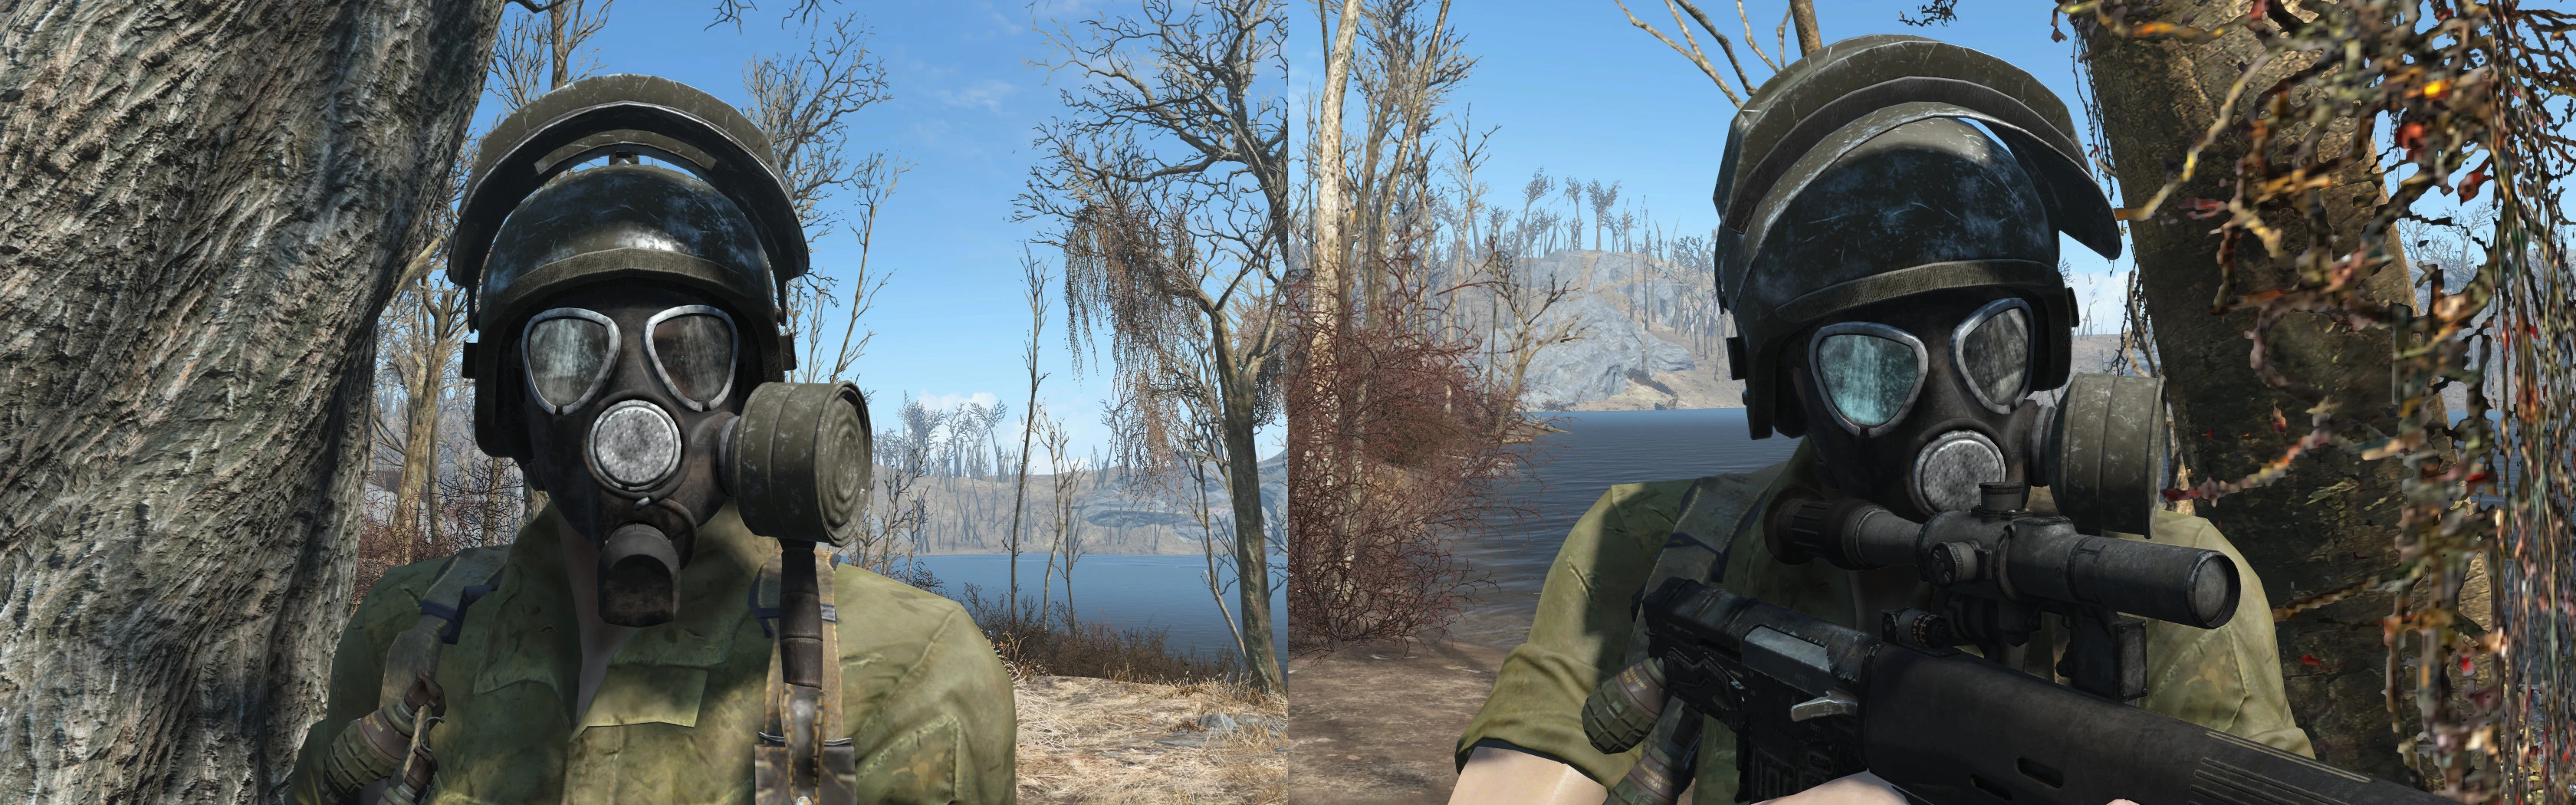 Fallout 4 противогаз и шлем фото 36